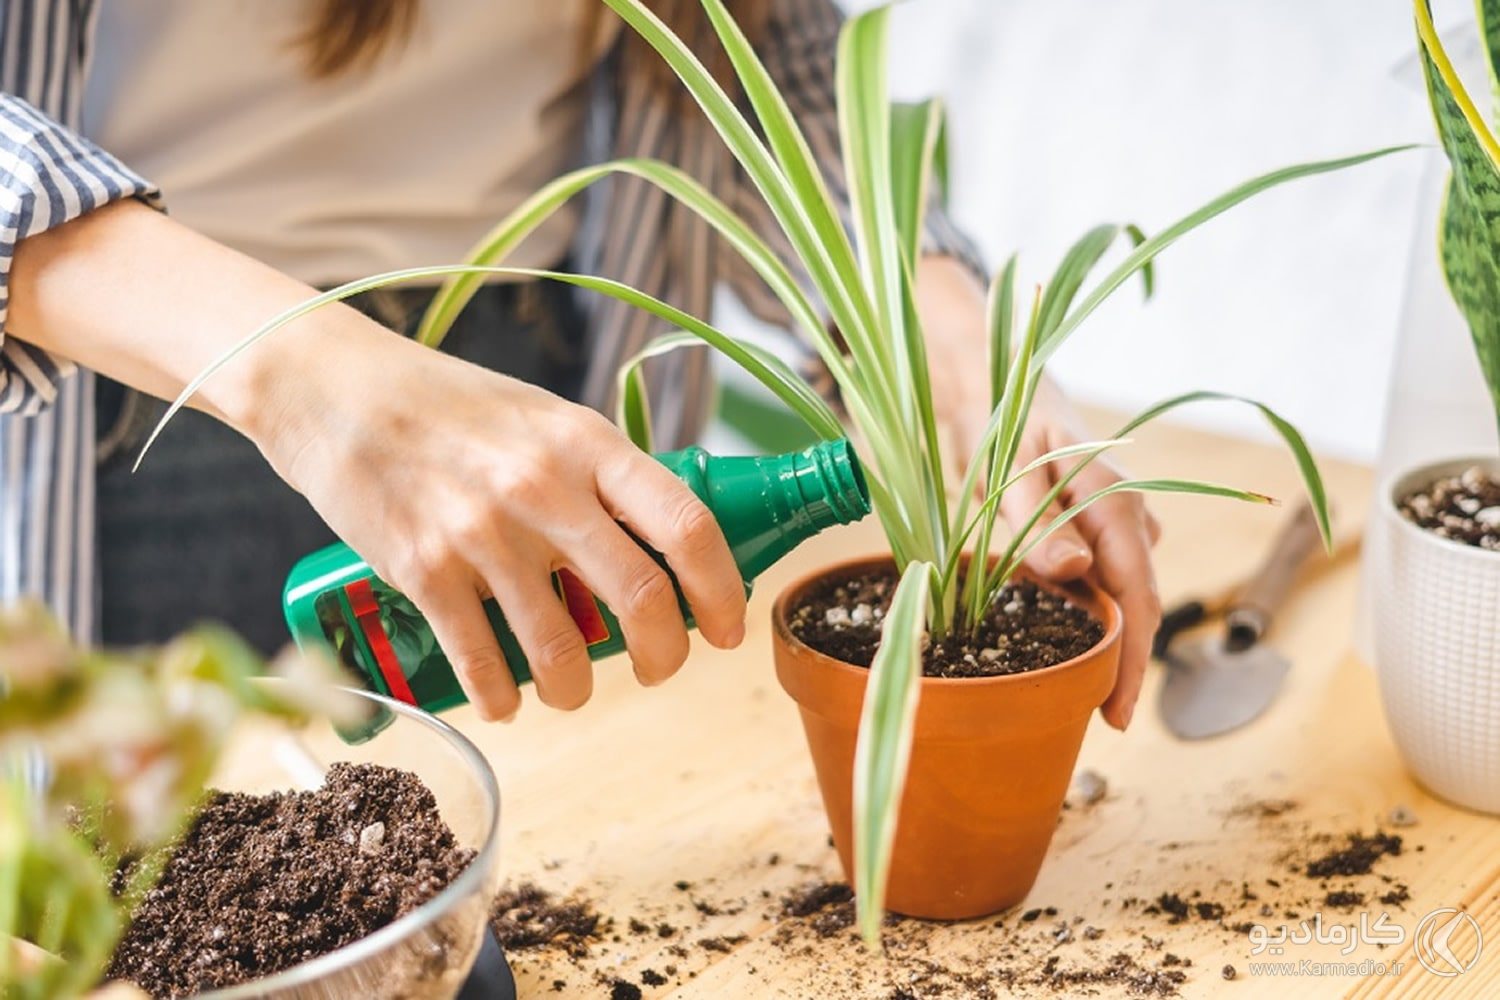 بهترین کود گیاهان آپارتمانی را بشناسید، کدام کود برای رشد گیاه مناسب است؟